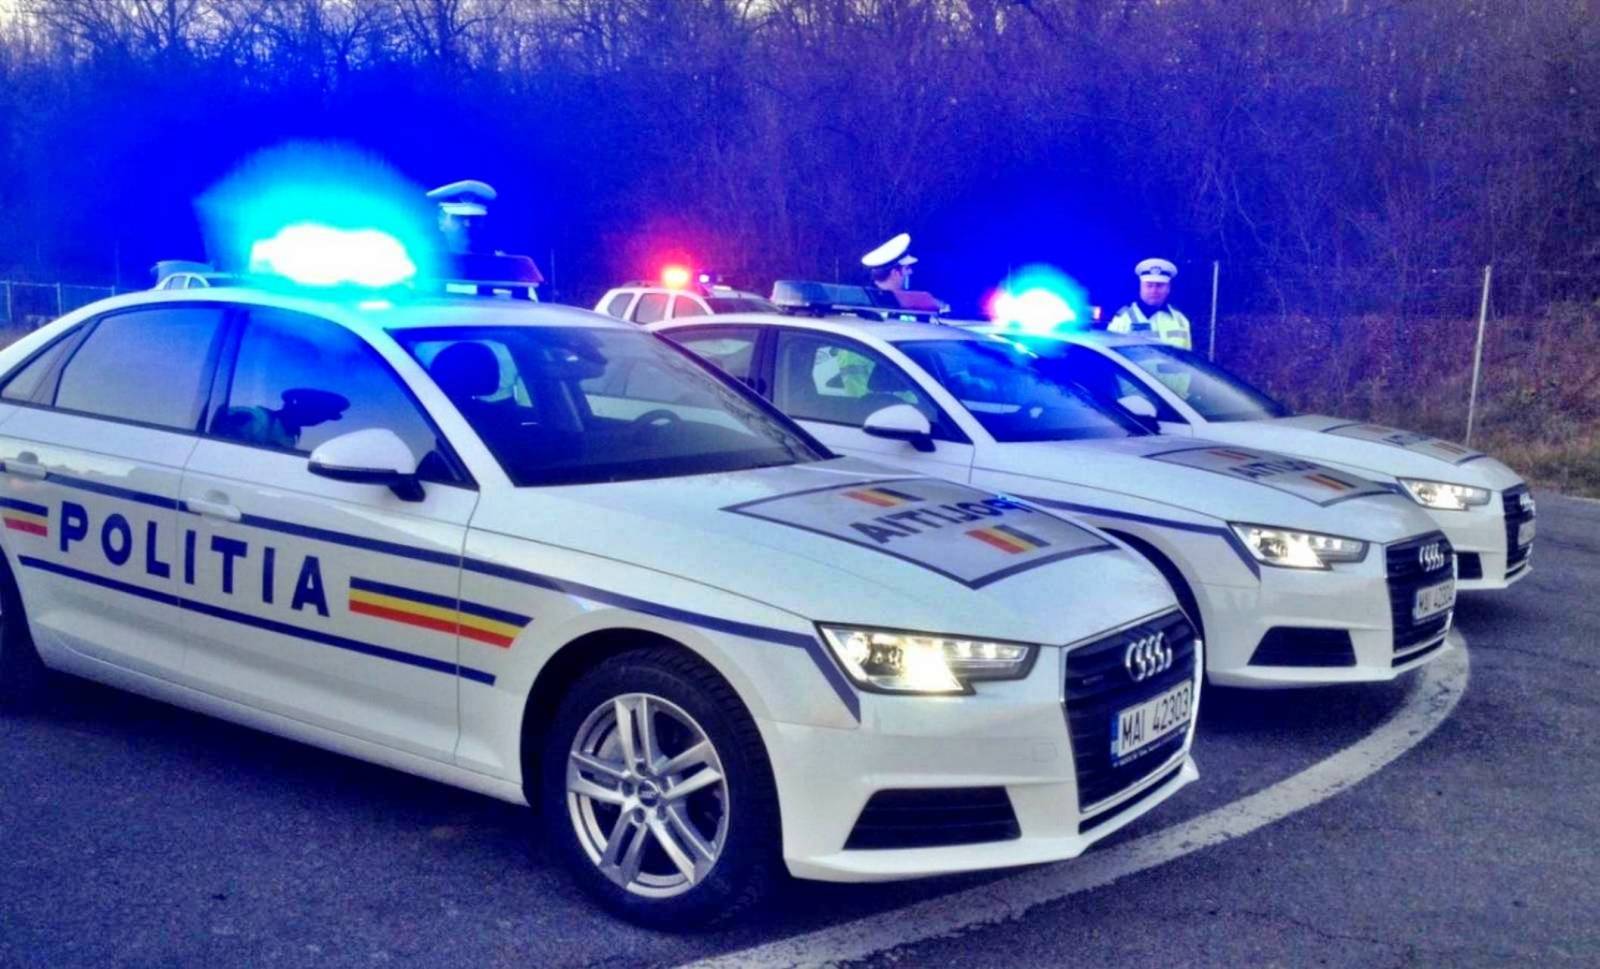 De Roemeense politie zet verkeersinvallen voort en spoort drugsgebruik op